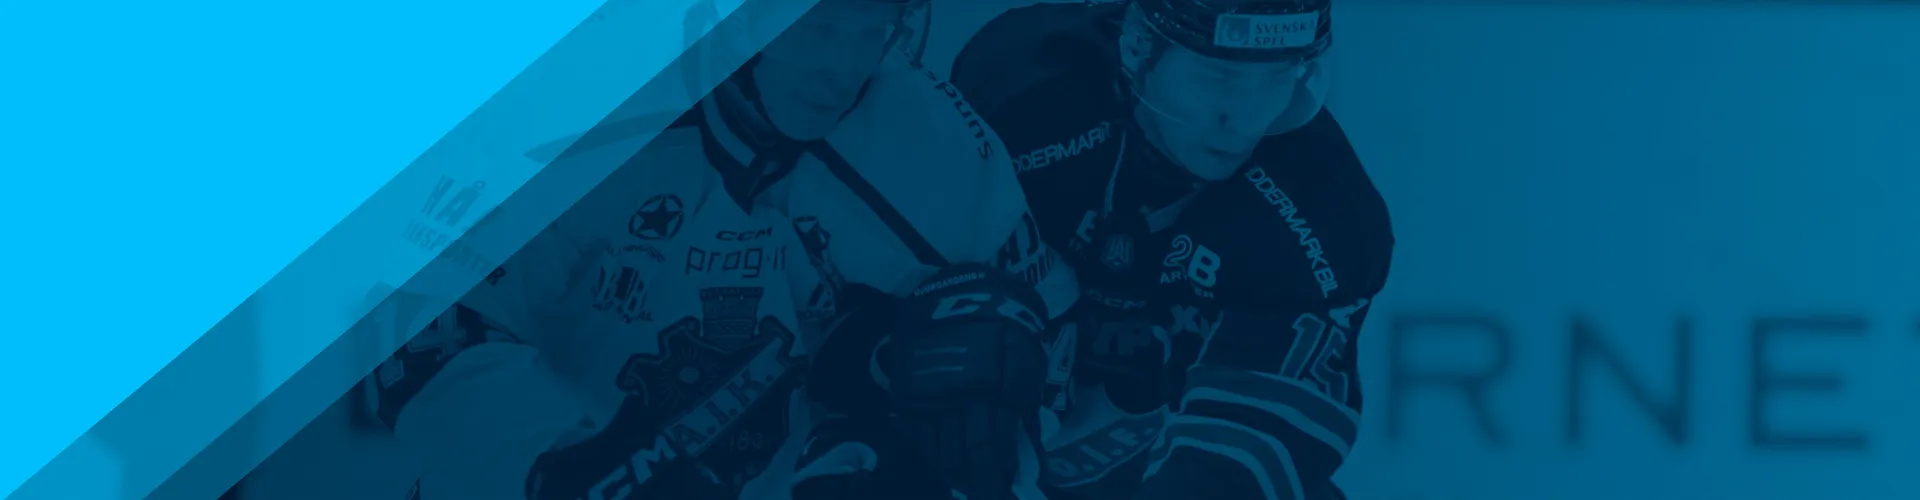 Hockeyallsvenskan på Svenska Spel Sport & Casino